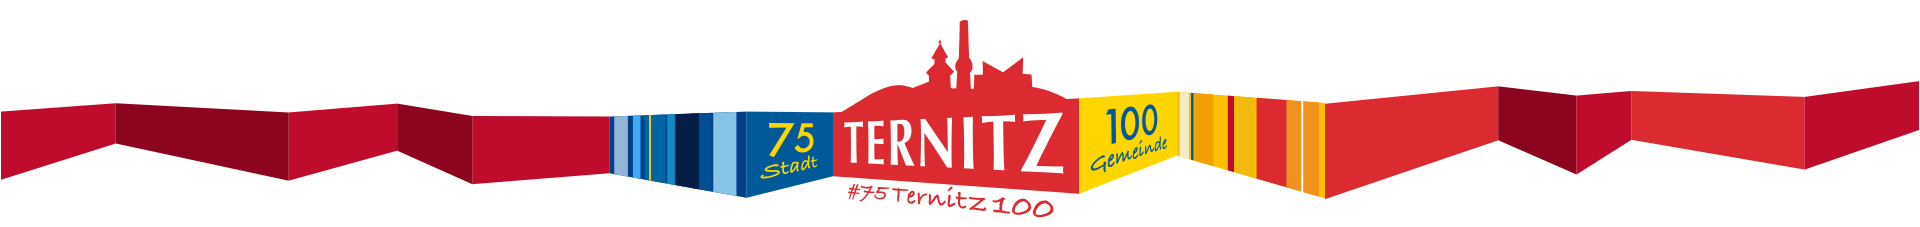 Logo: 75Ternitz100